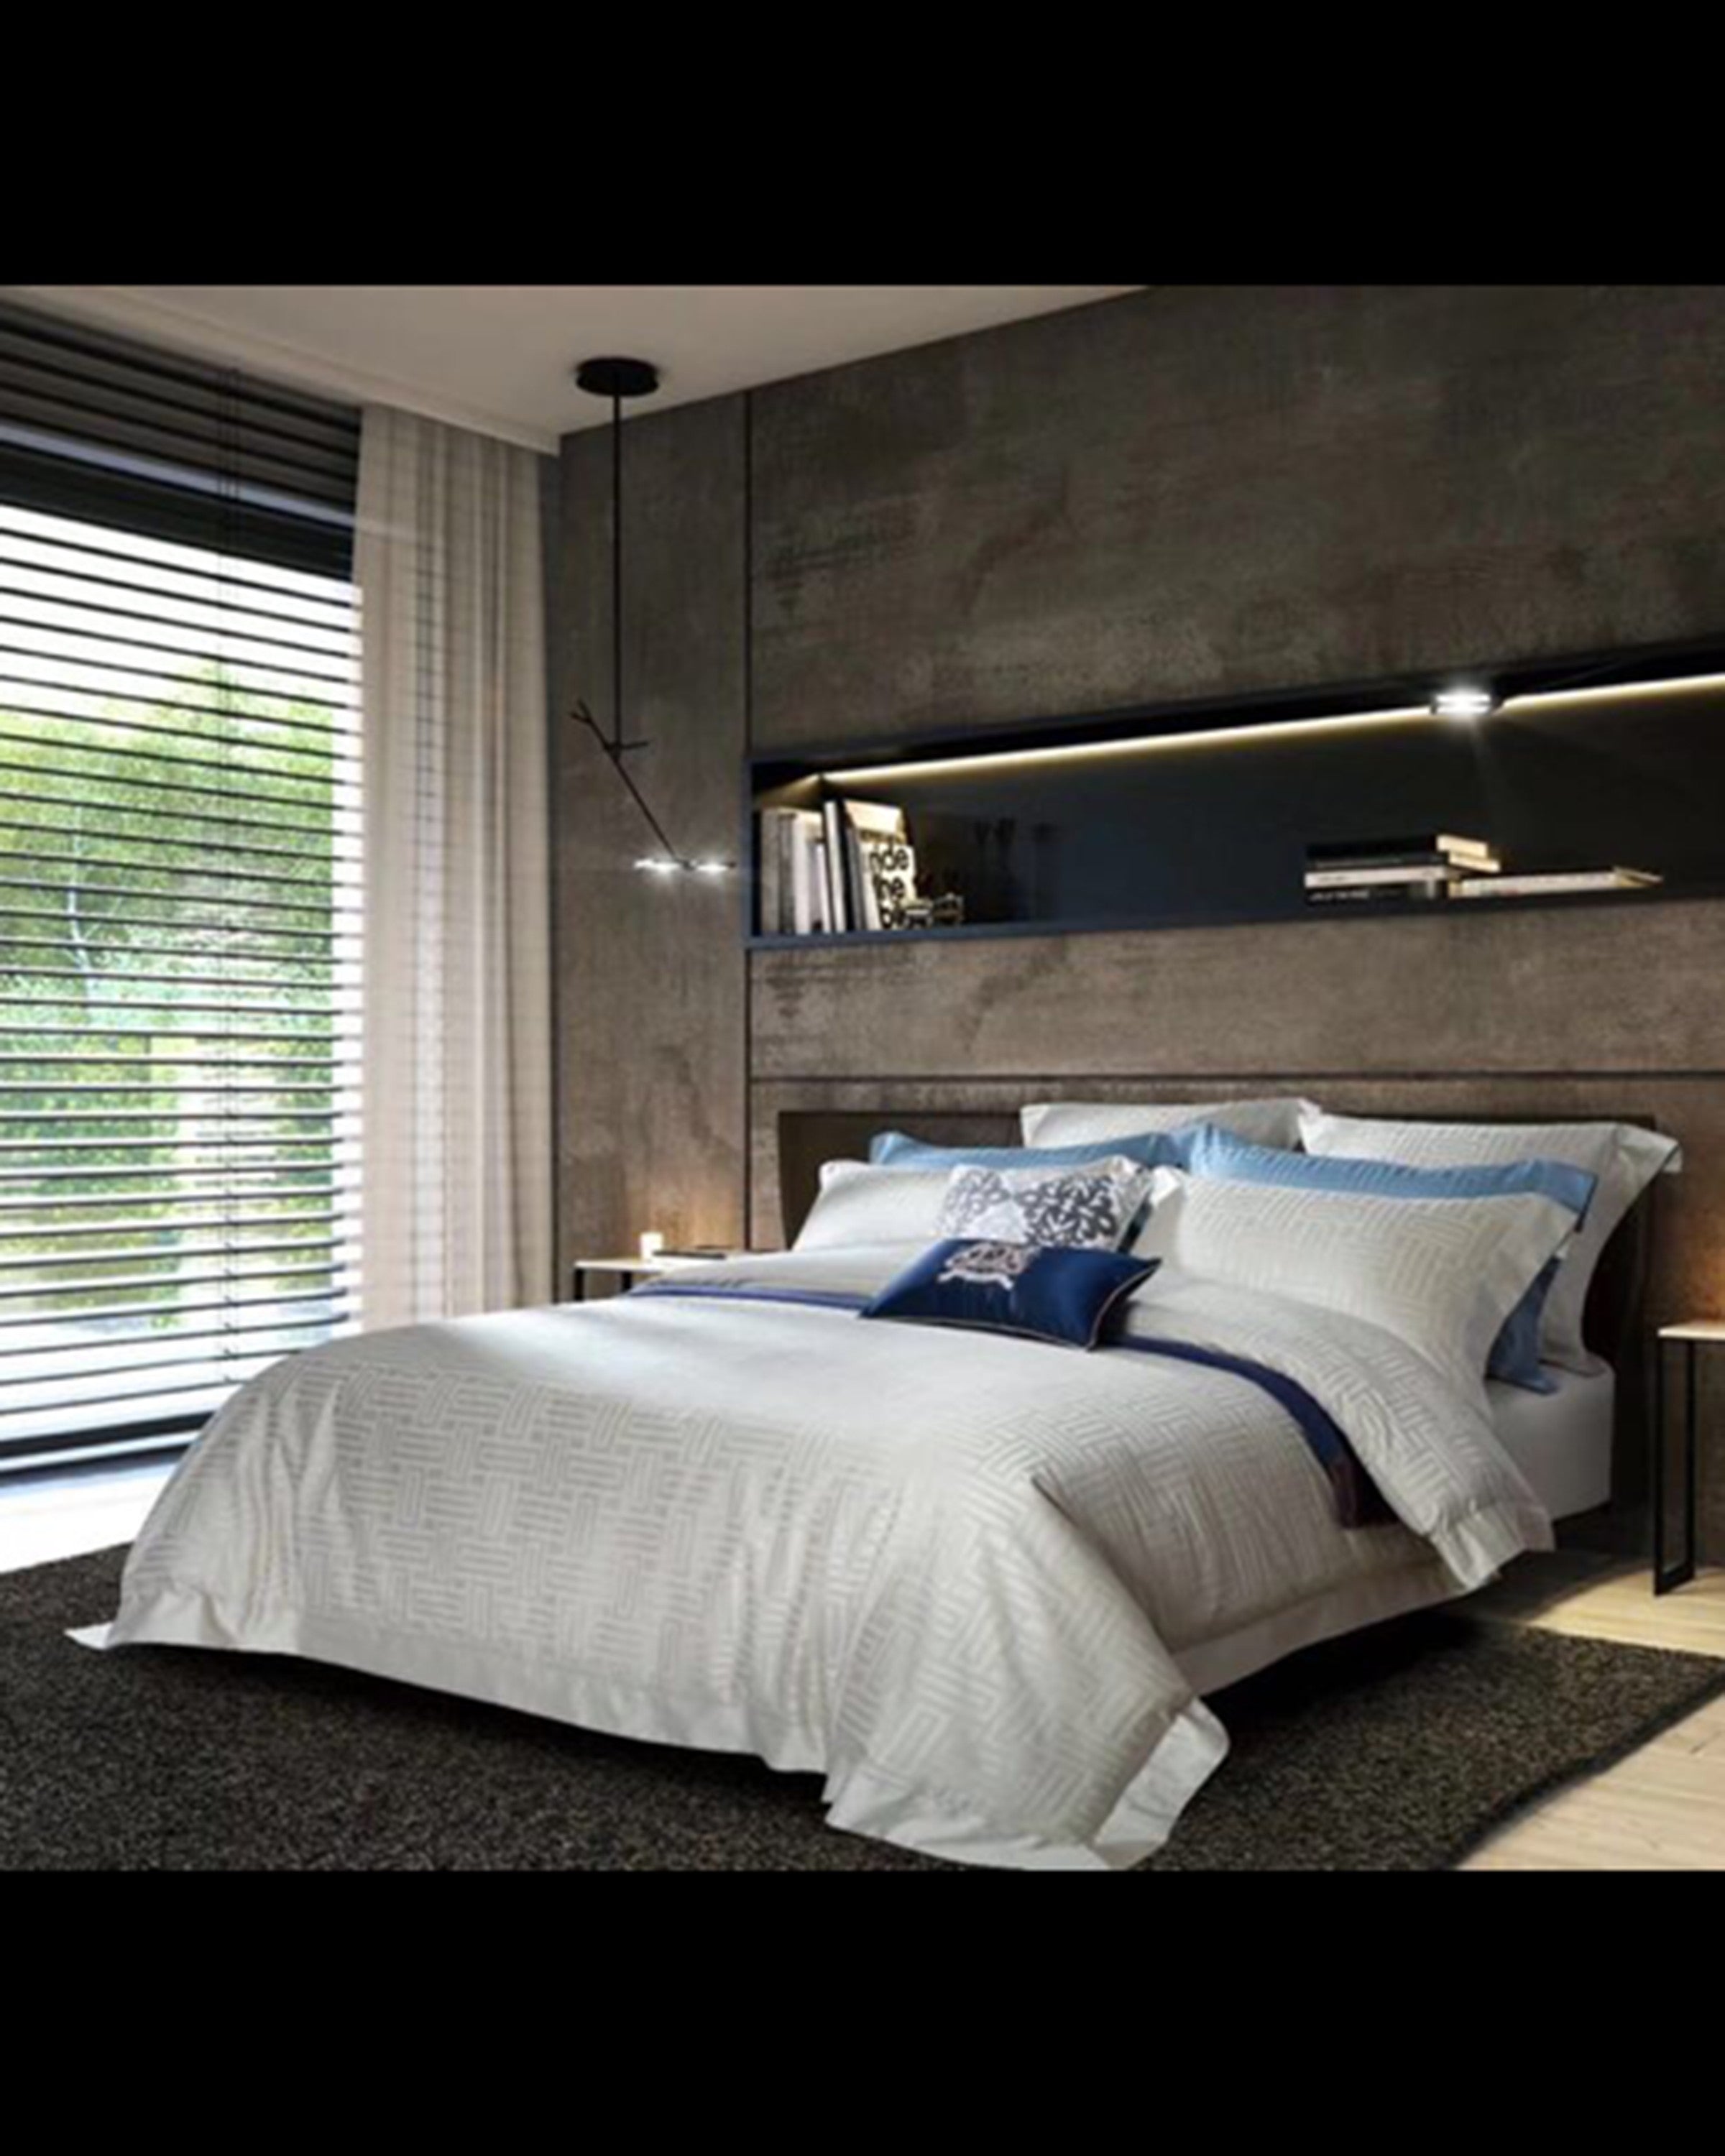 Luxury linen bed set